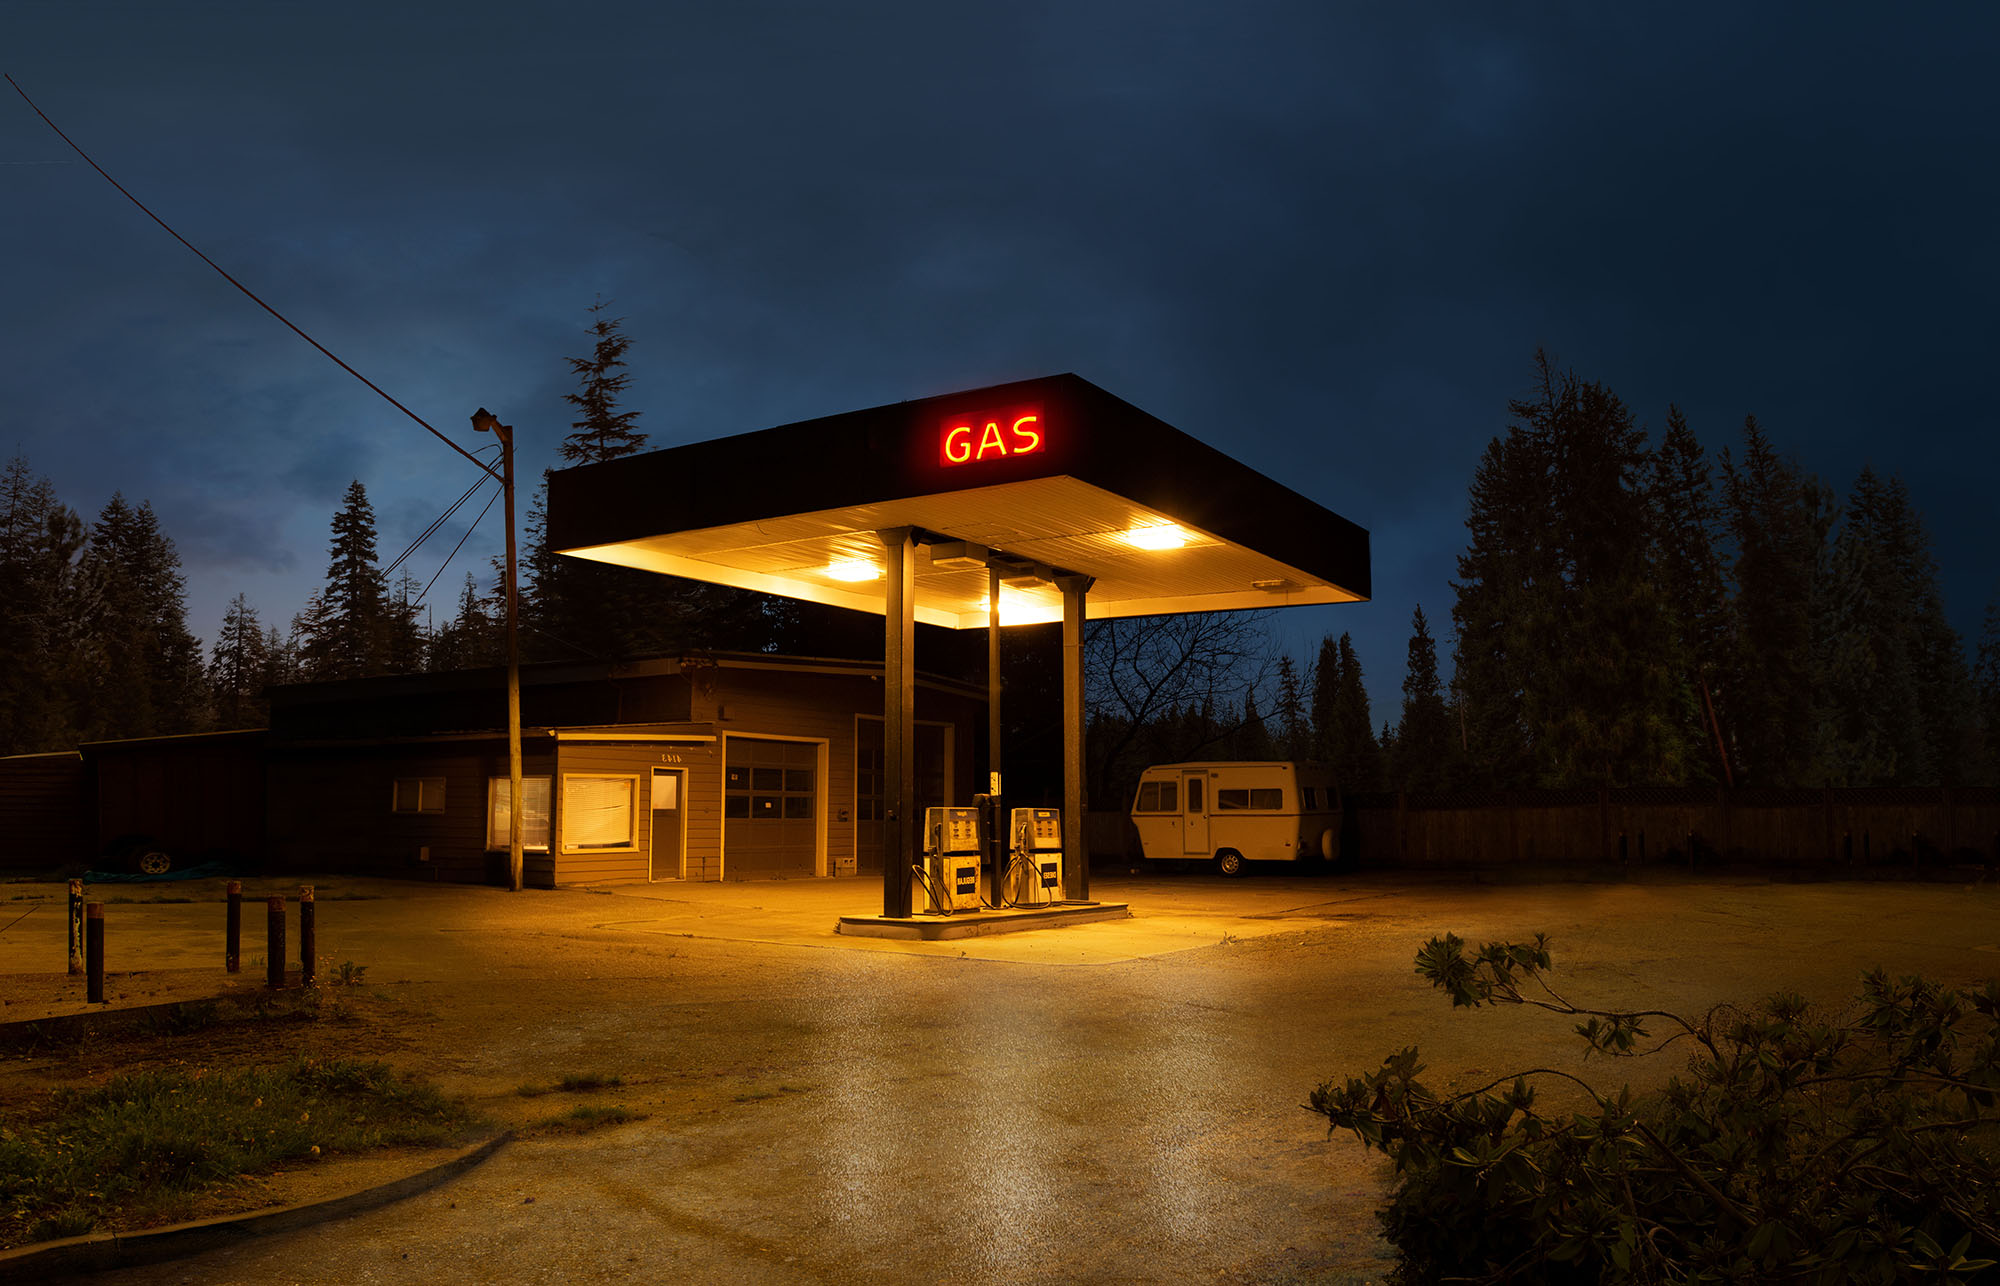 Exxon - creepy gas station